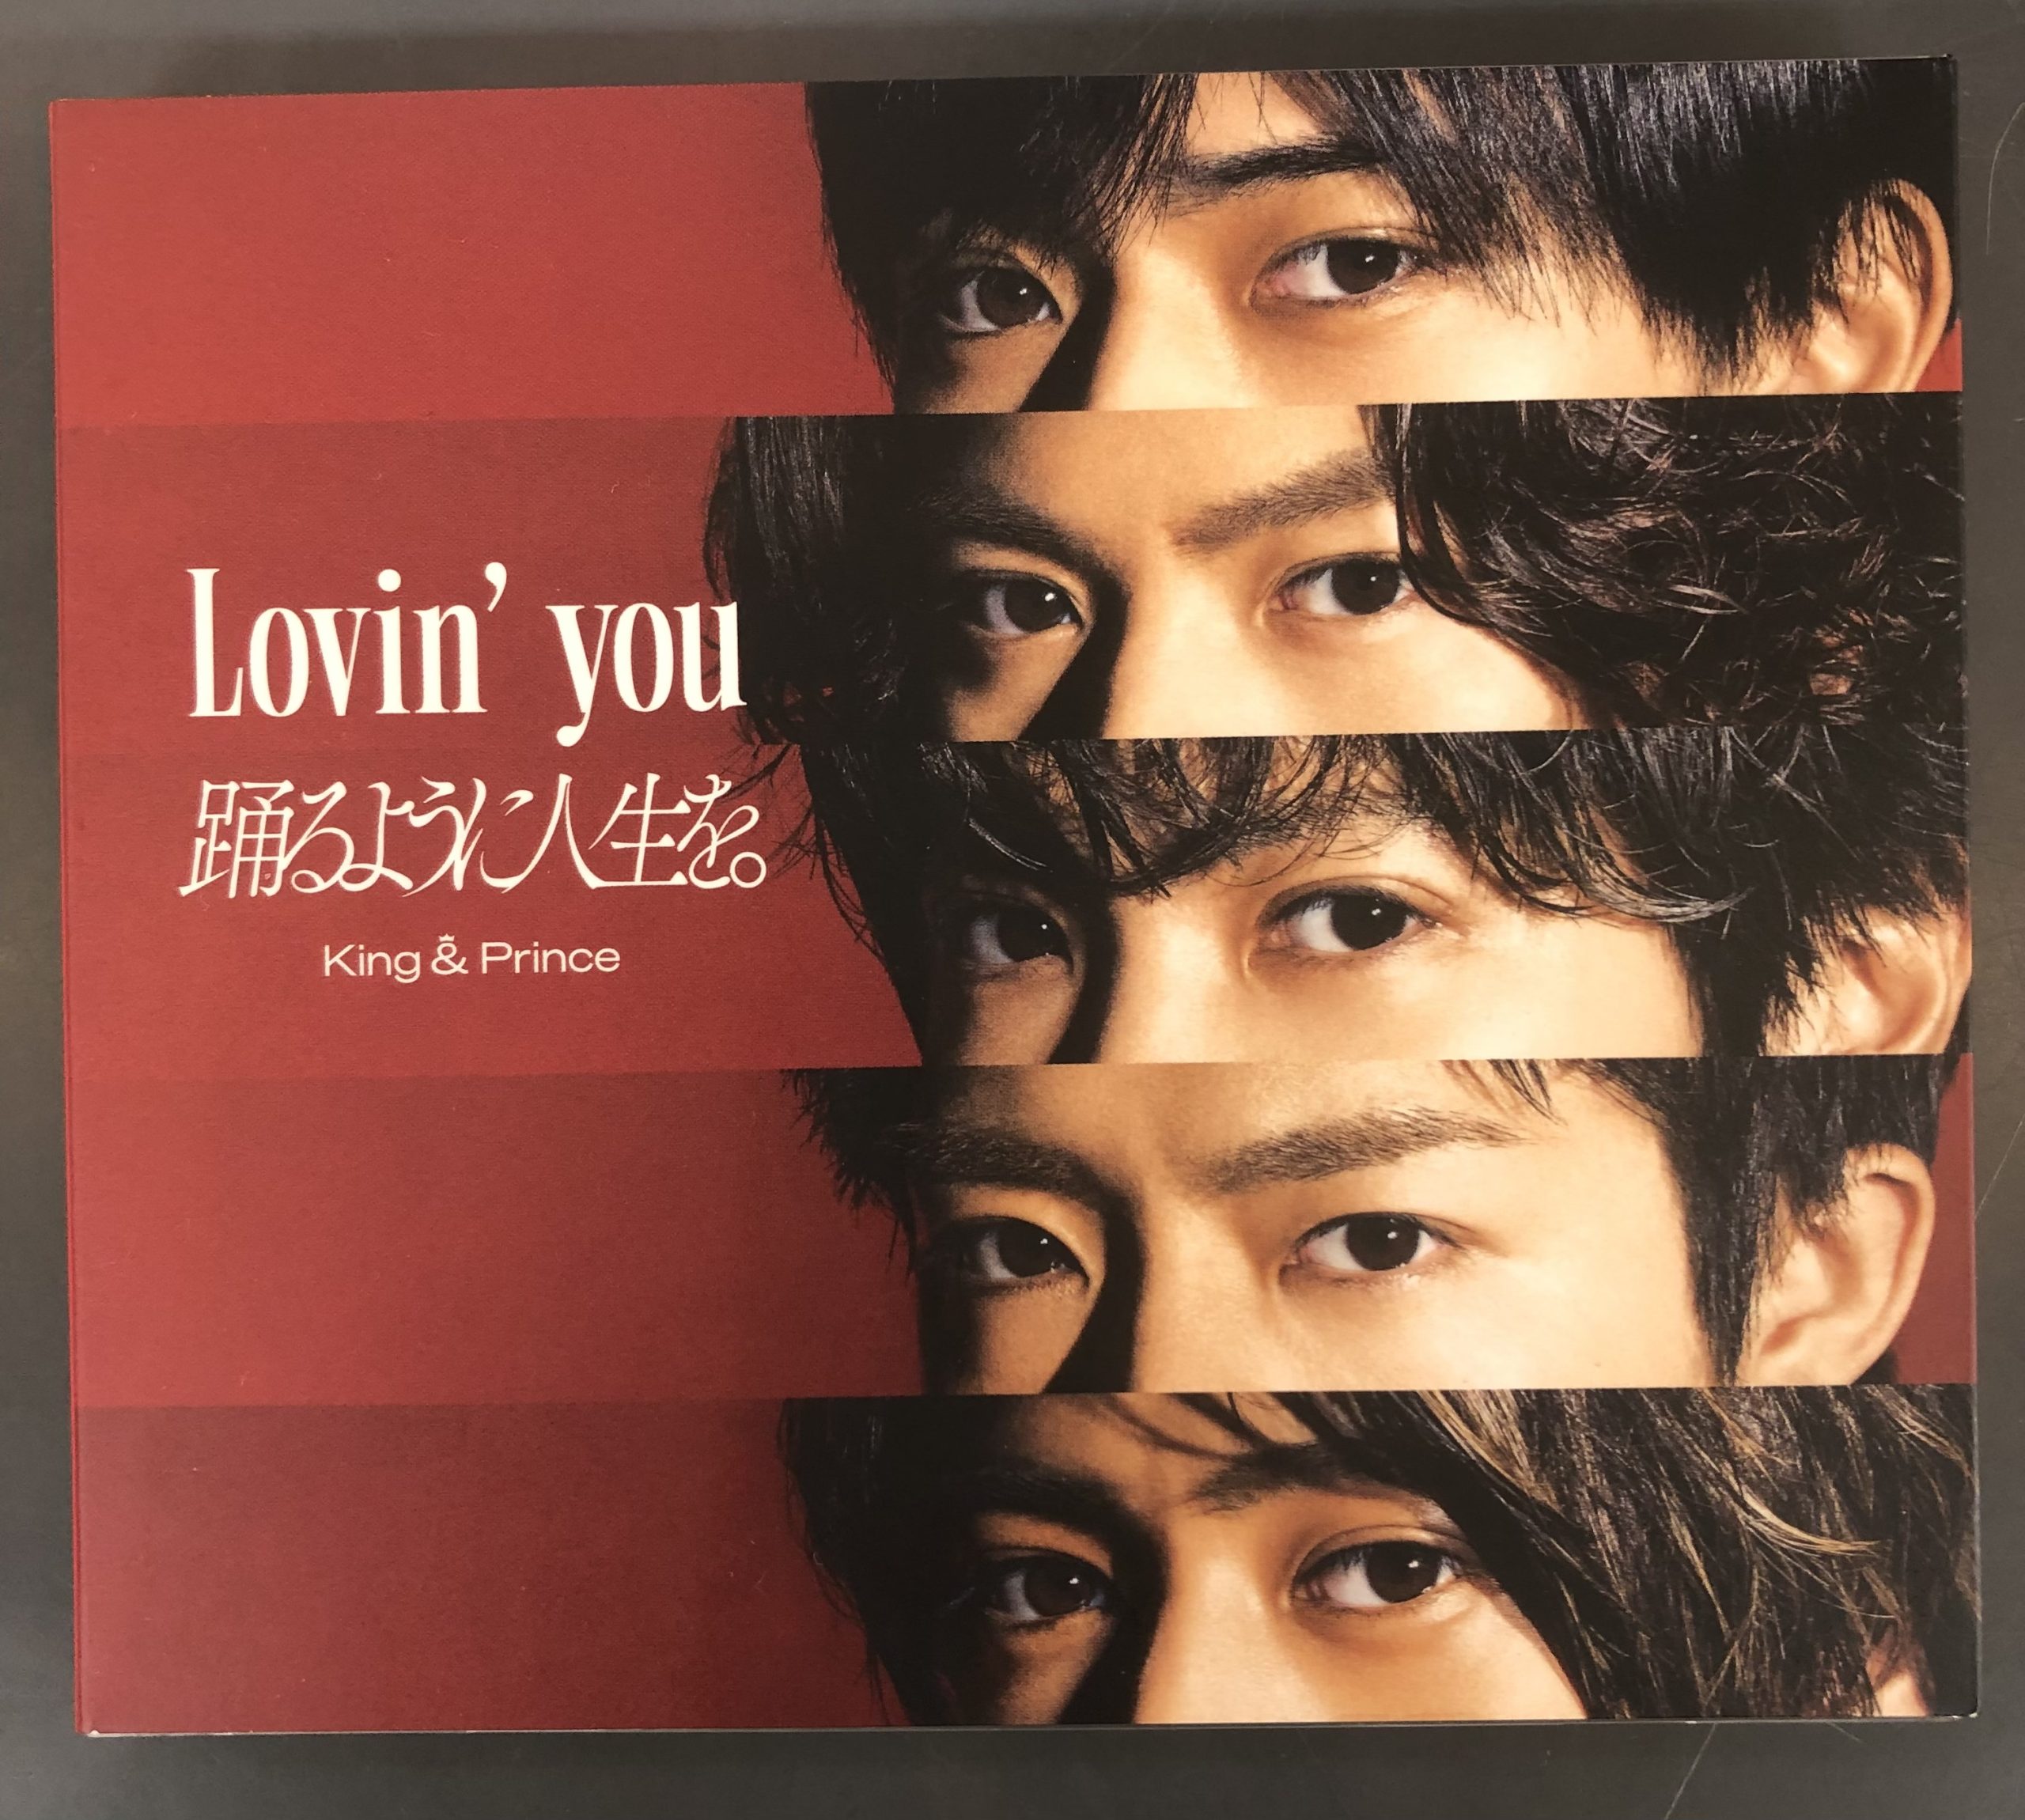 キンプリ 『Lovin' you』DVD付き限定版 買取しました! | トレカ